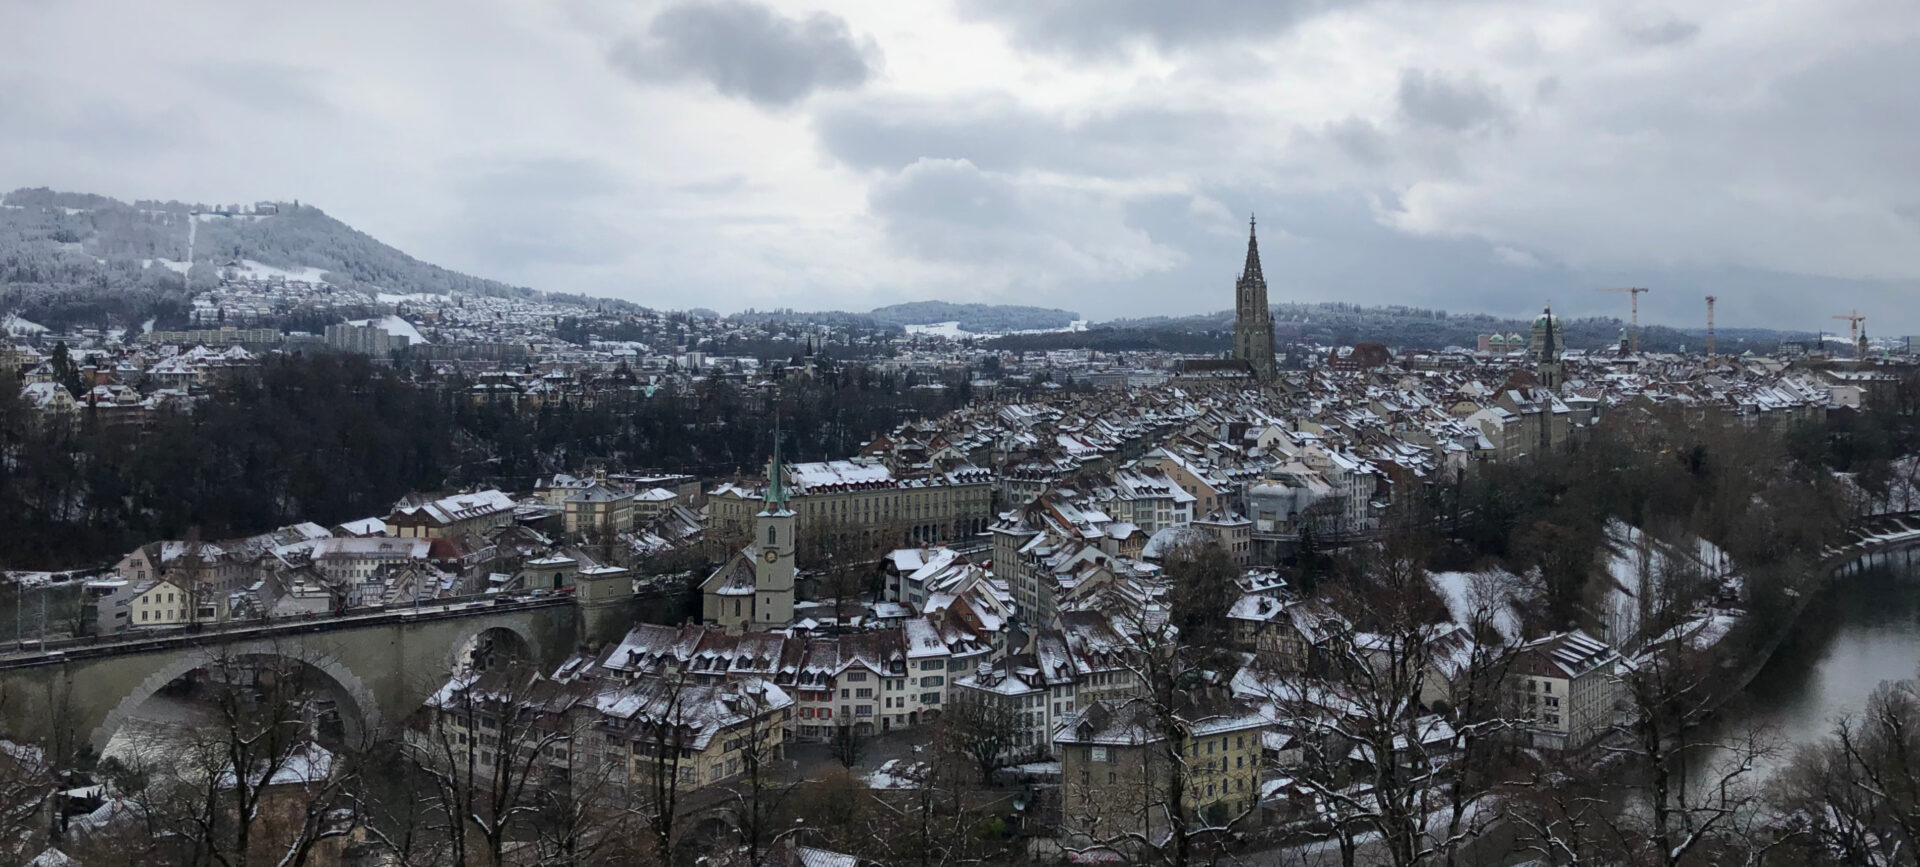 L'avenir financier va-t-il s'assombrir pour les Eglises du canton de Berne | © Flickr/Thomas Woodtli/CC BY-SA 2.0